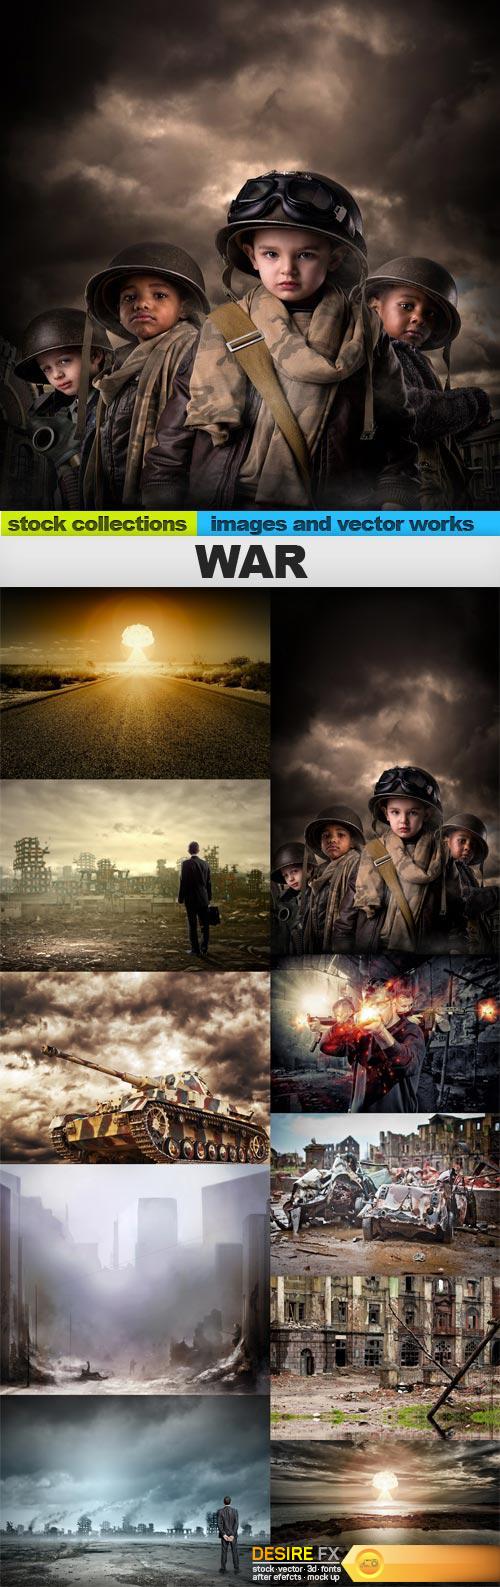 War, 10 x UHQ JPEG